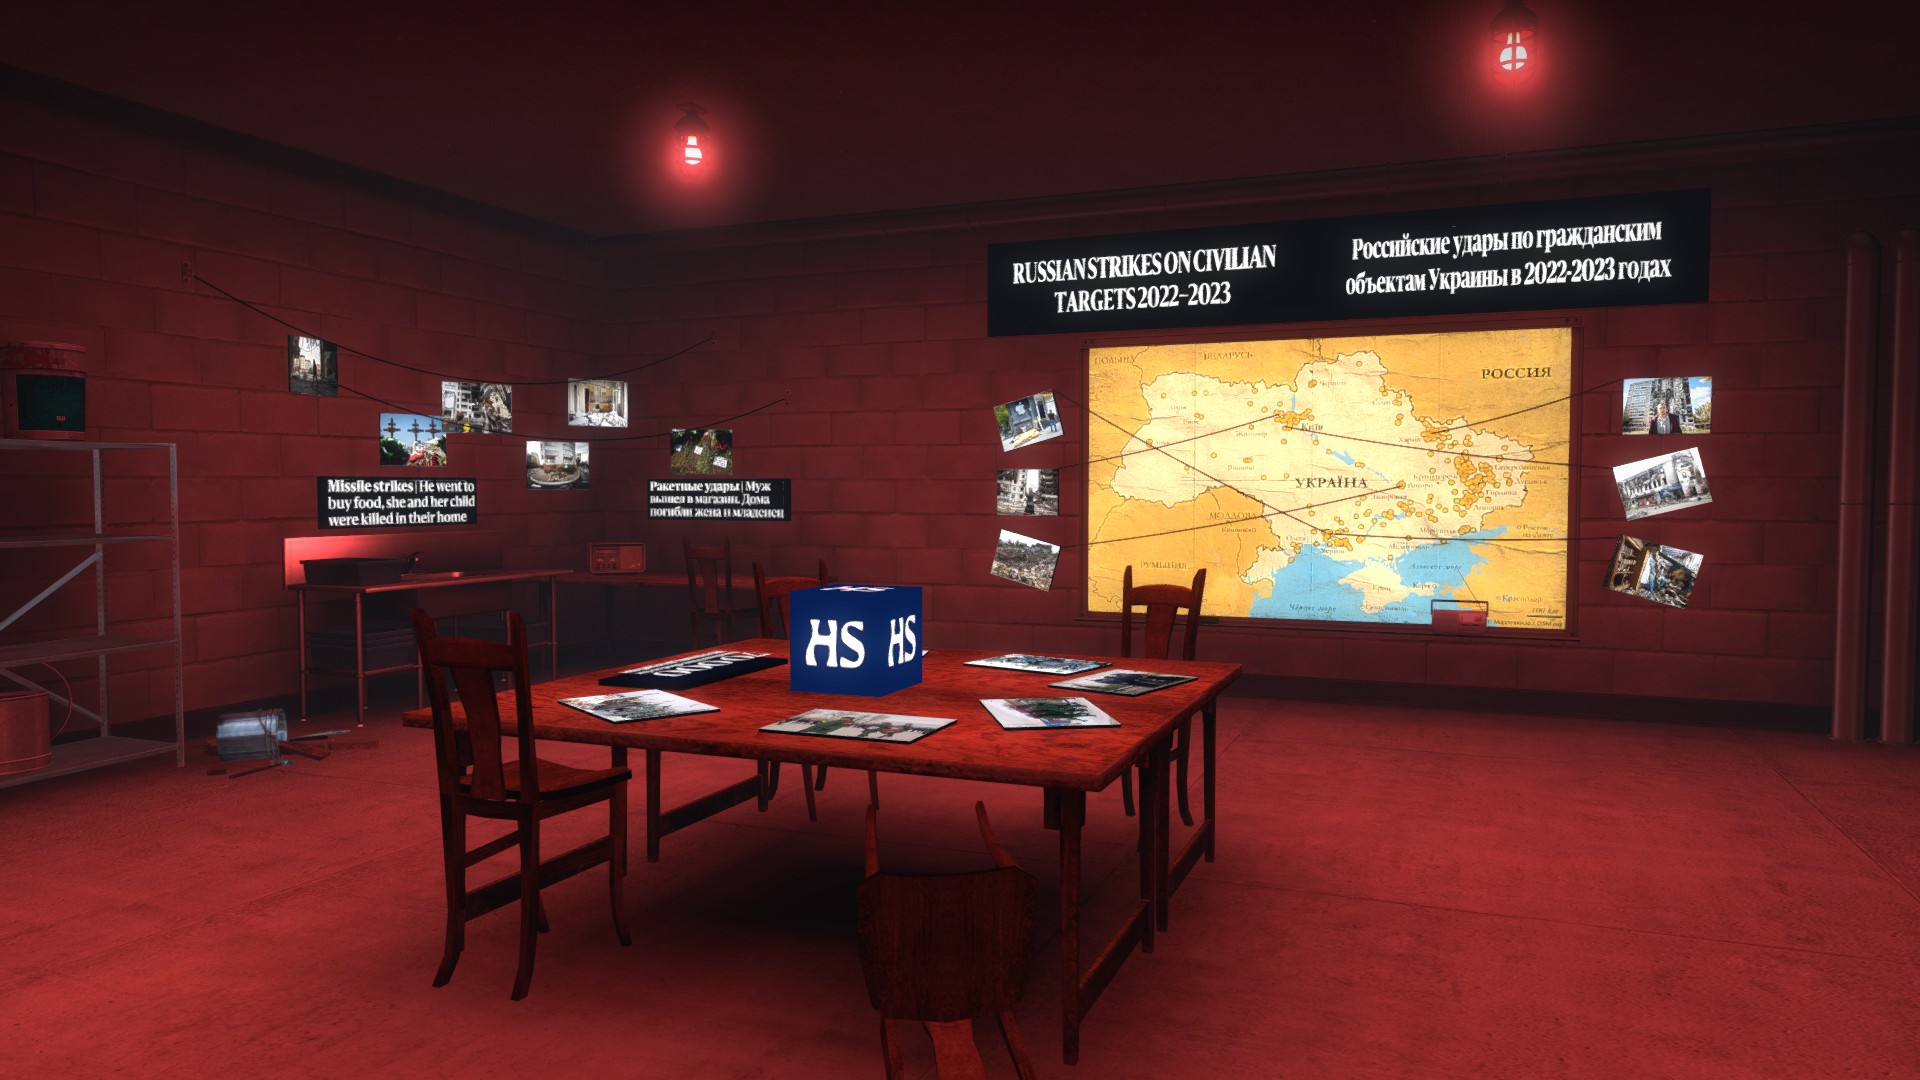 El mapa CSGO tiene una habitación secreta, llena de noticias prohibidas por Rusia: un mapa CSGO utilizado para compartir información sobre la invasión rusa de Ucrania